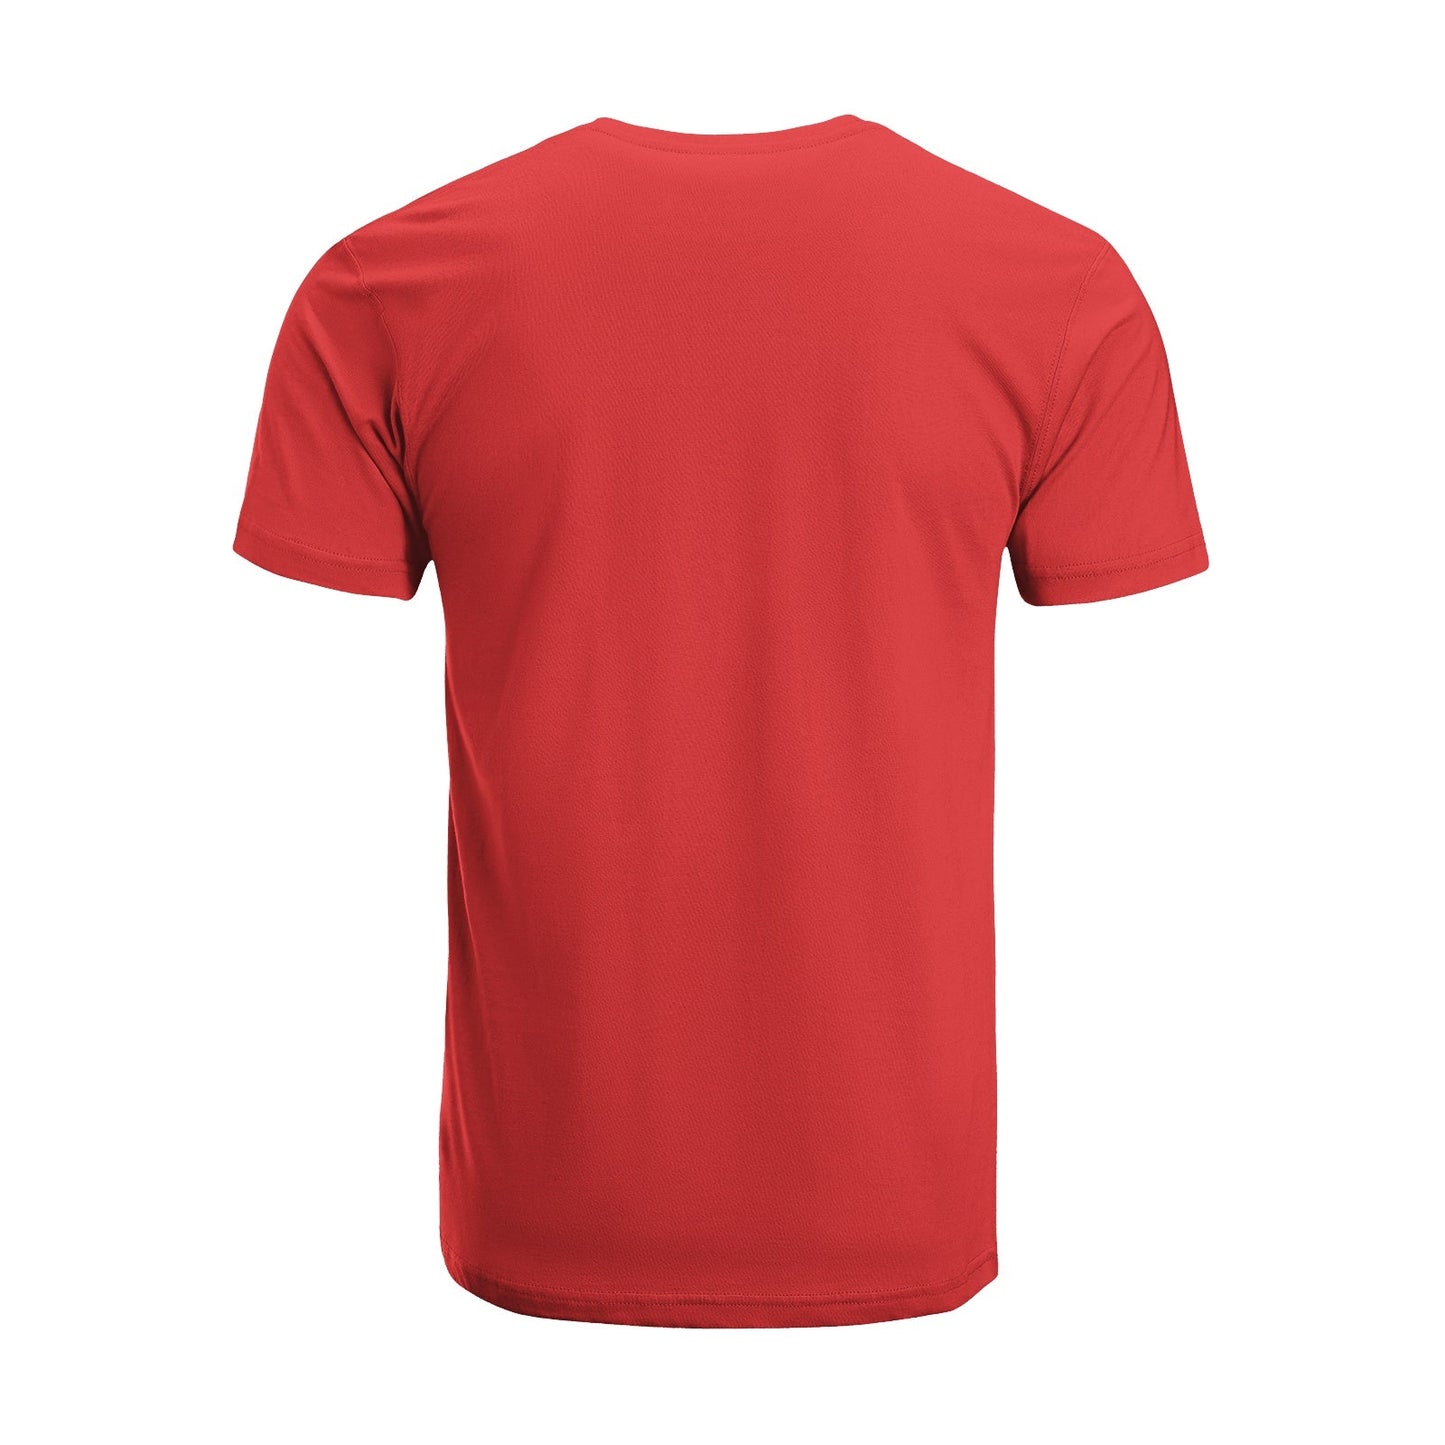 Unisex Short Sleeve Crew Neck Cotton Jersey T-Shirt TRUCK 17